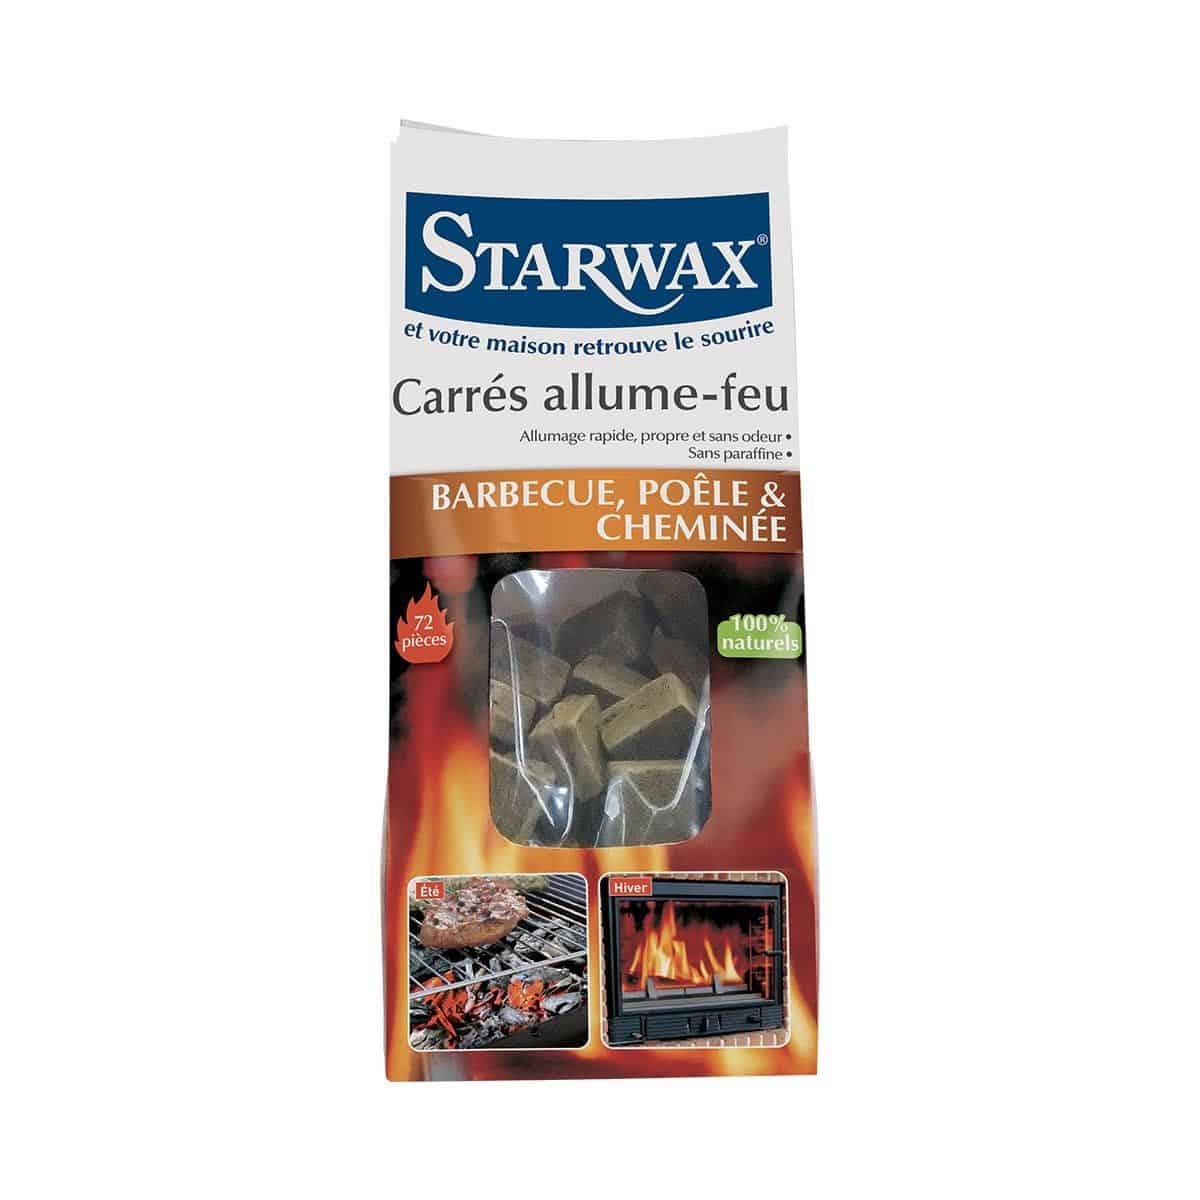 Rouleaux allume-feu pour barbecue, poêle et cheminée x25 STARWAX